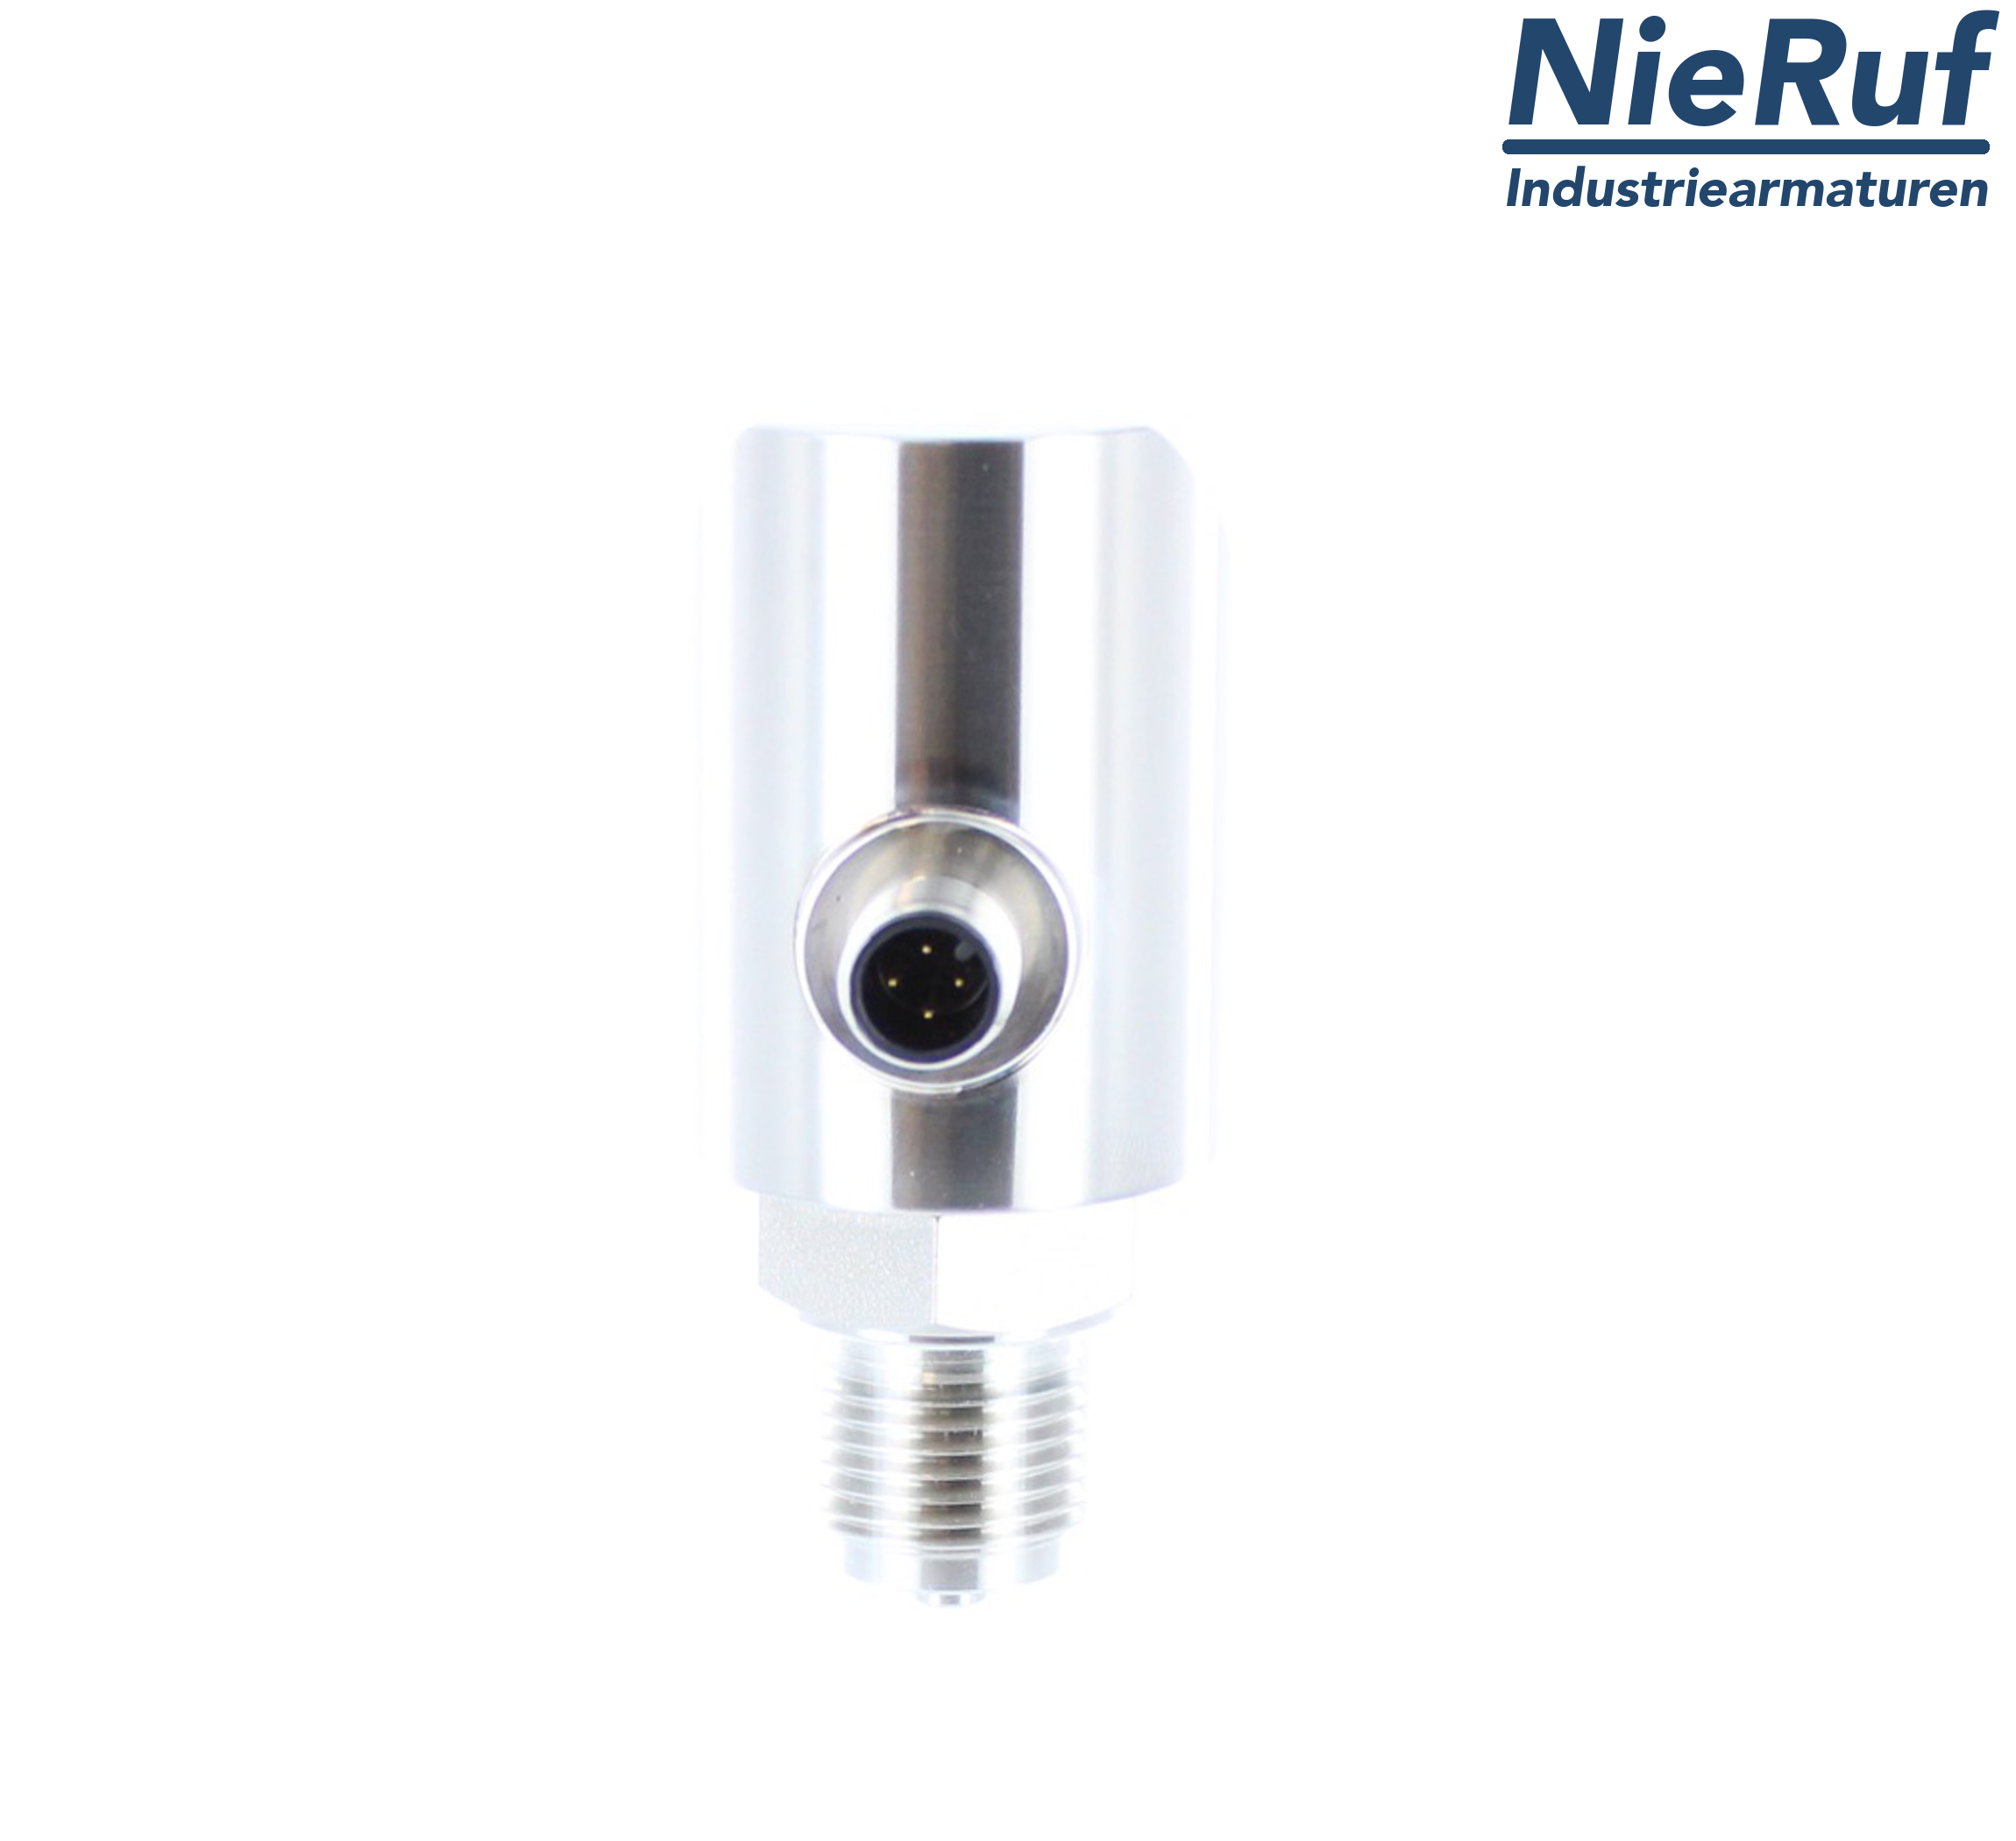 digital pressure sensor G 1/2" B IB 4-wire: 1xPNP, 1x4 - 20mA, Desina FPM 0,0 - 1,0 bar